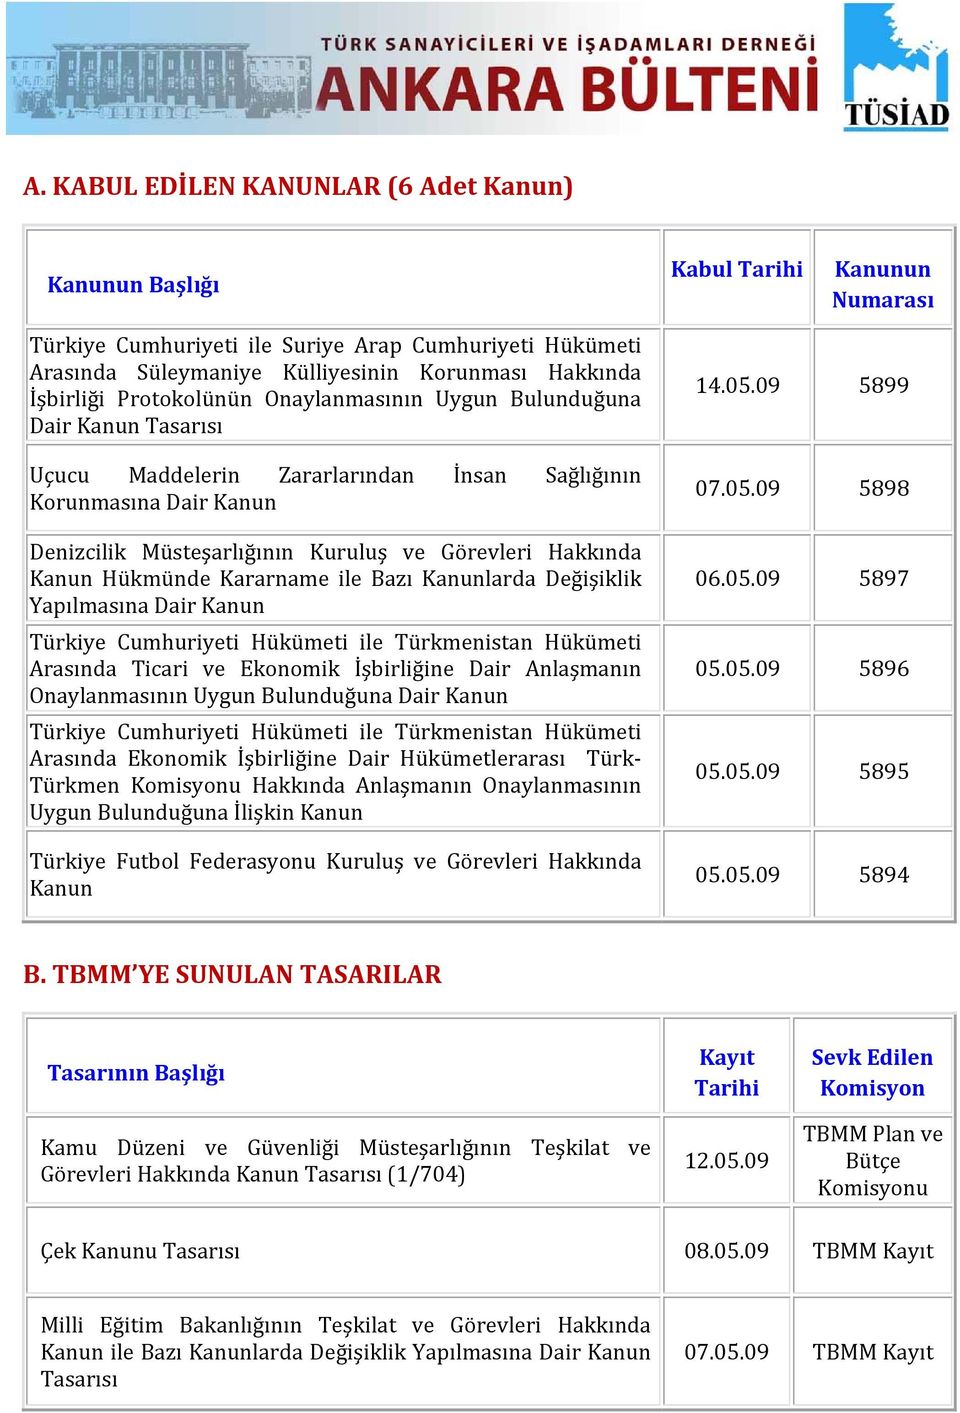 Hakkında Kanun Hükmünde Kararname ile Bazı Kanunlarda Değişiklik Yapılmasına Dair Kanun Türkiye Cumhuriyeti Hükümeti ile Türkmenistan Hükümeti Arasında Ticari ve Ekonomik İşbirliğine Dair Anlaşmanın